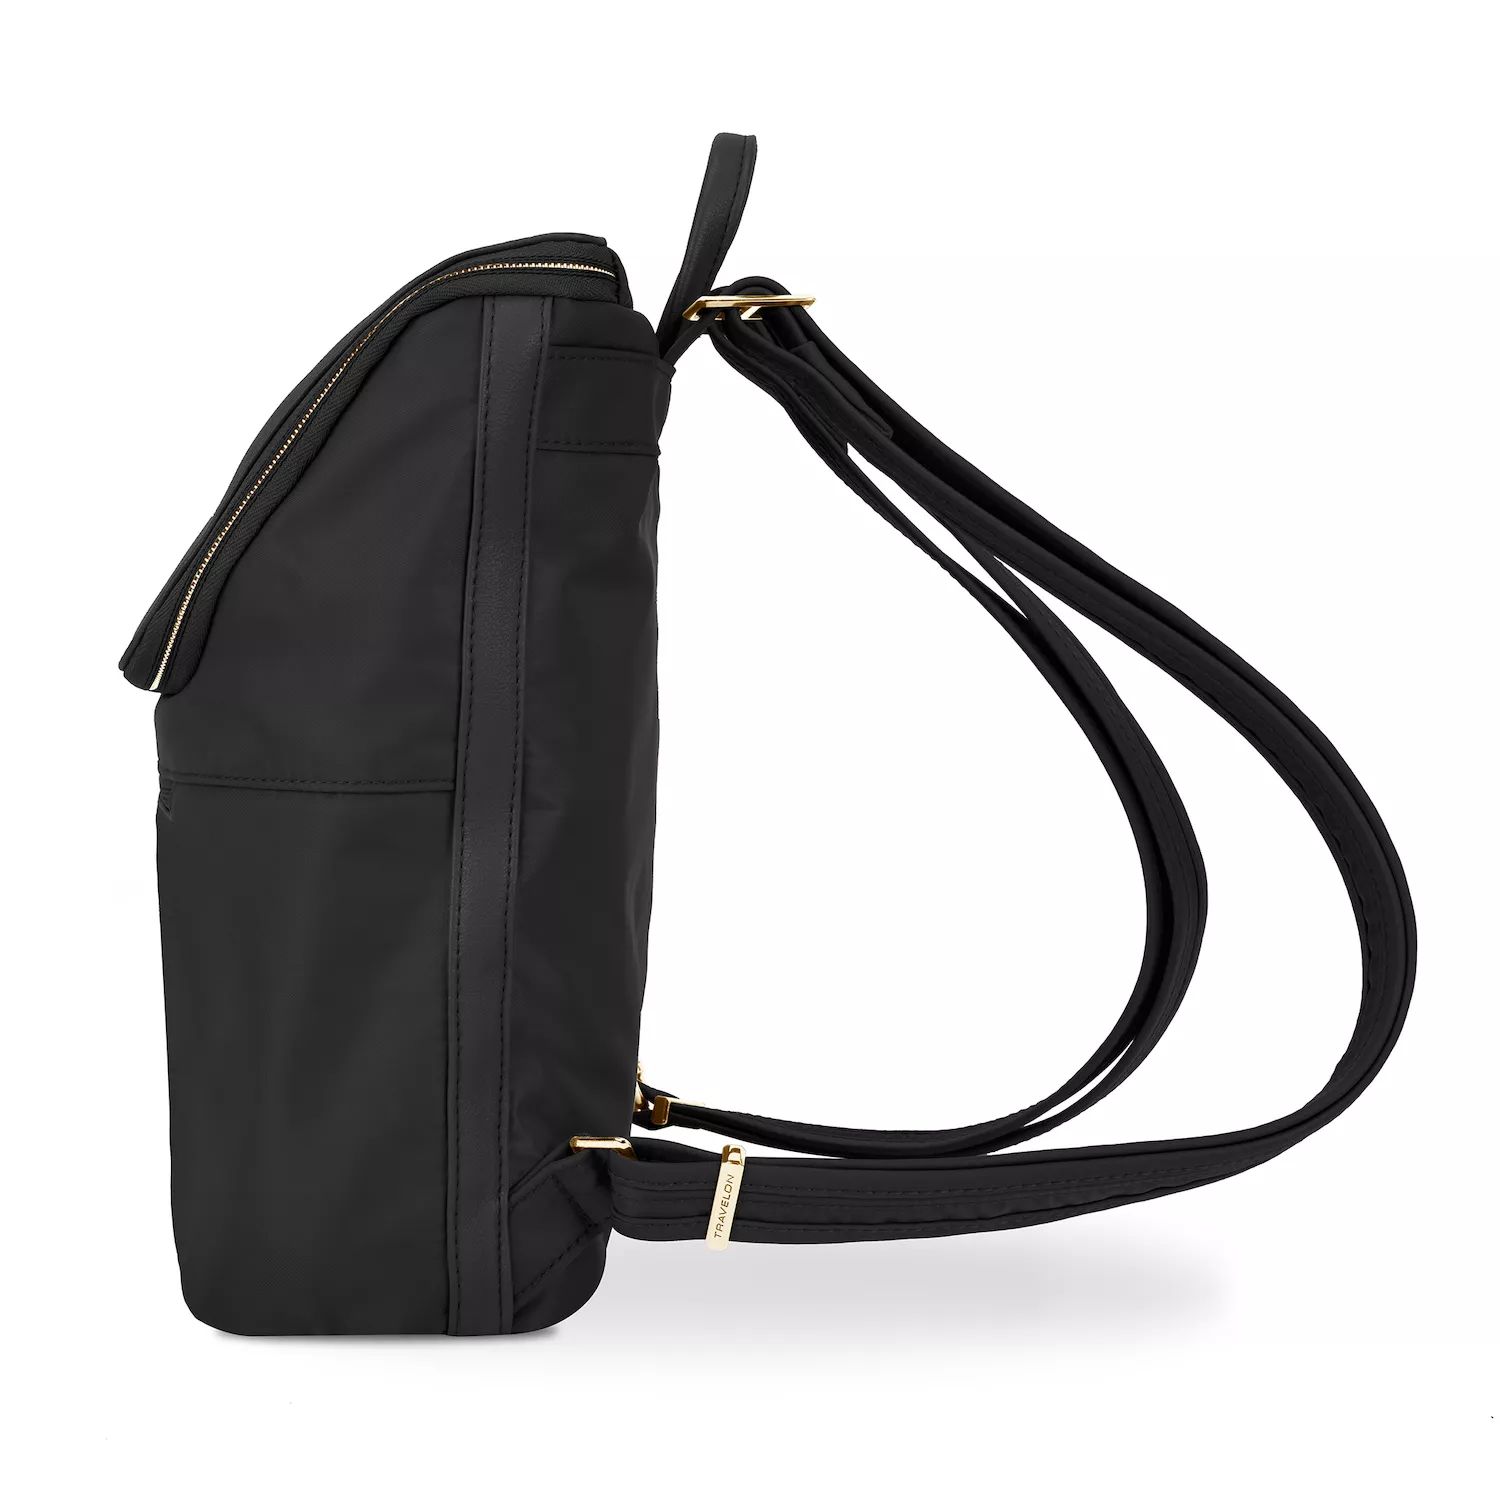 Рюкзак Travelon Addison с защитой от кражи, черный винтажный противоугонный рюкзак коричневый